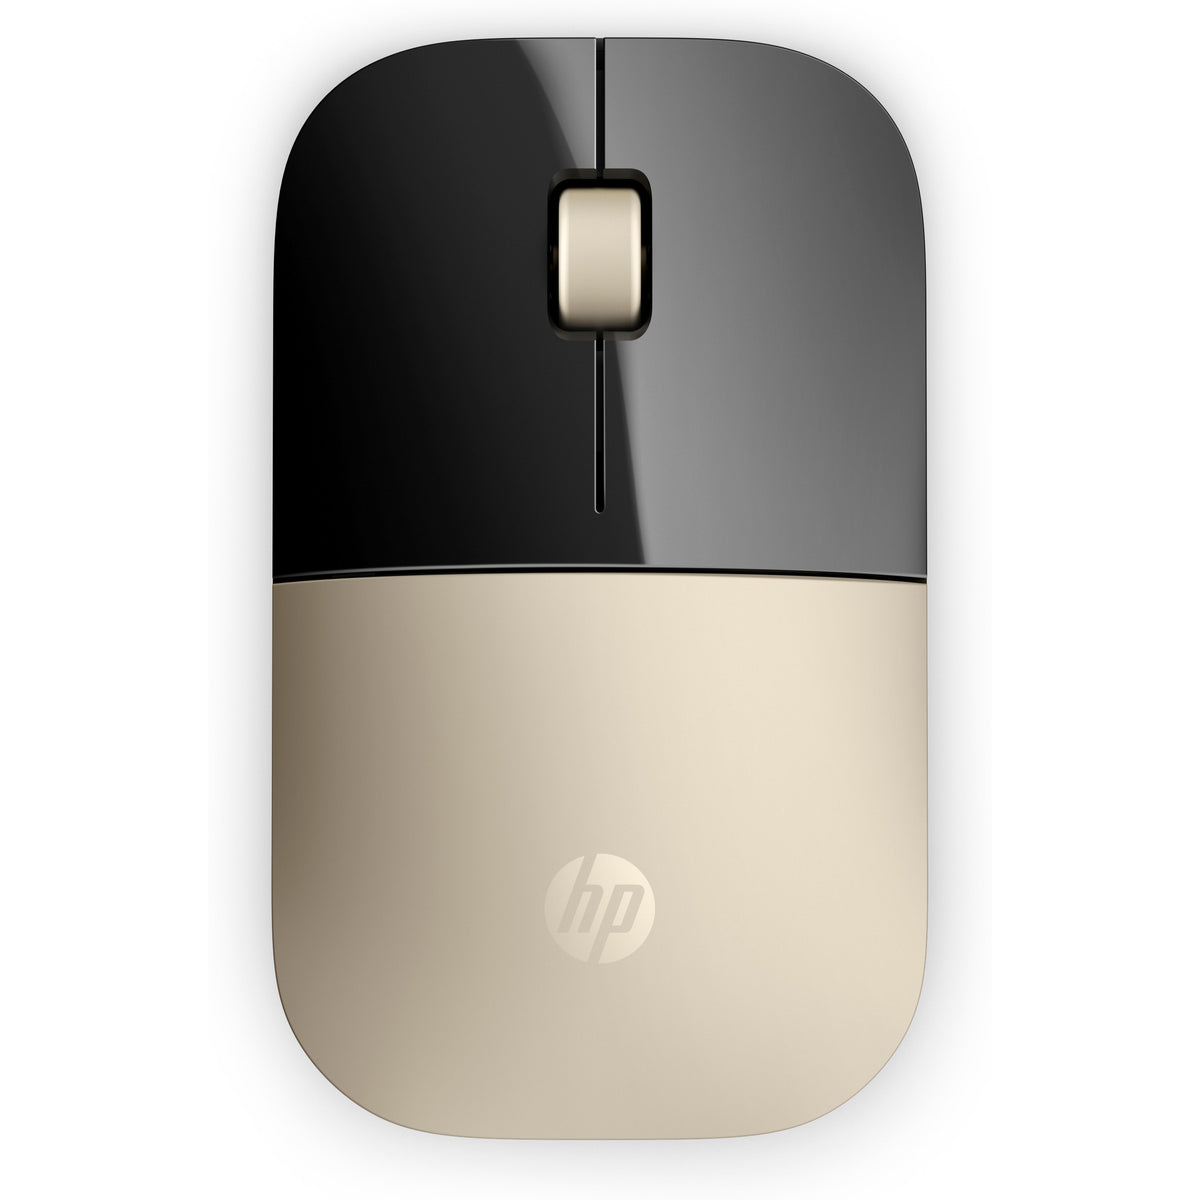 Bezdrátová myš HP Z3700 (X7Q43AA)